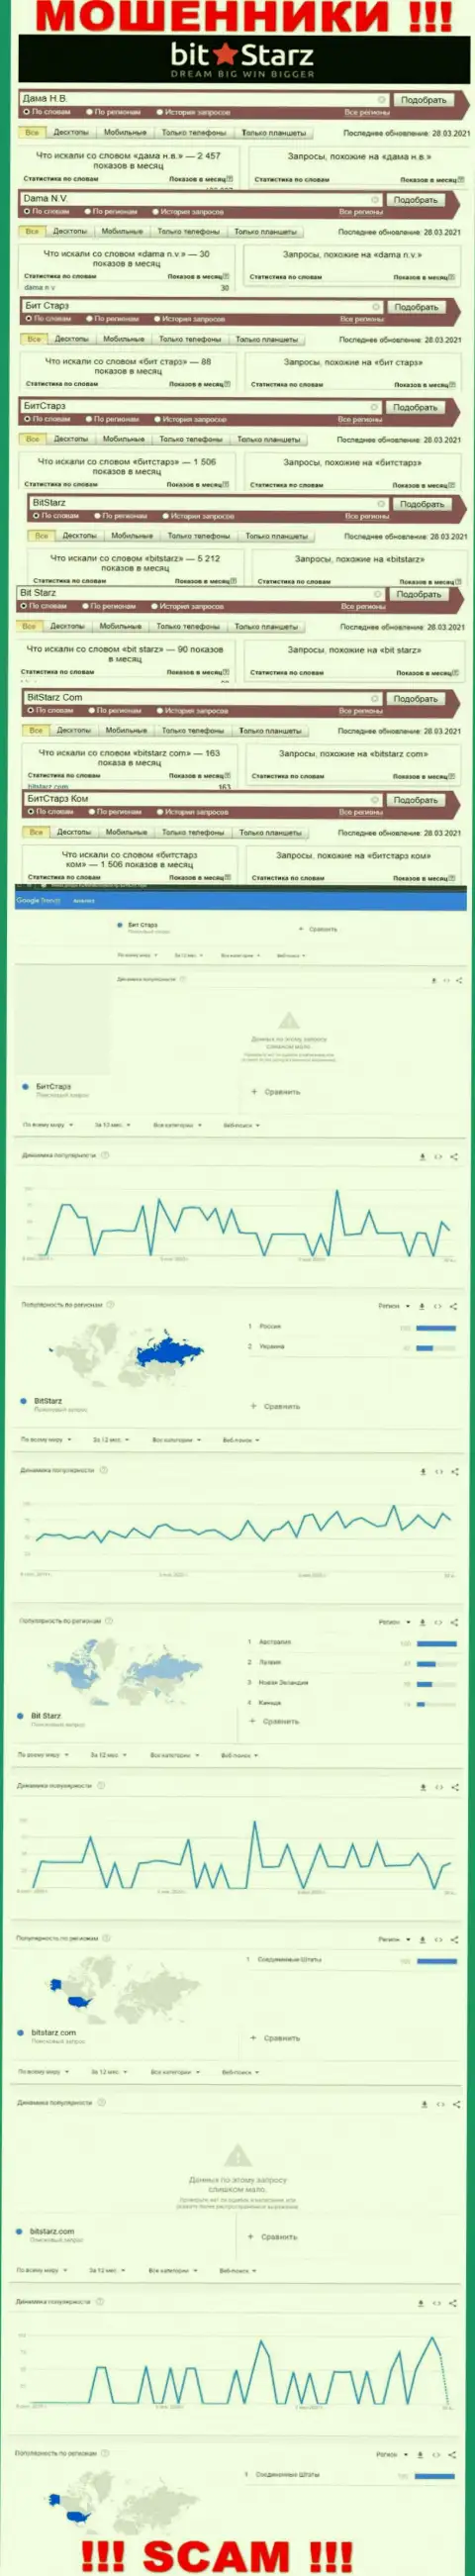 Статистические показатели о запросах в поисковиках internet сети данных о компании БитСтарз